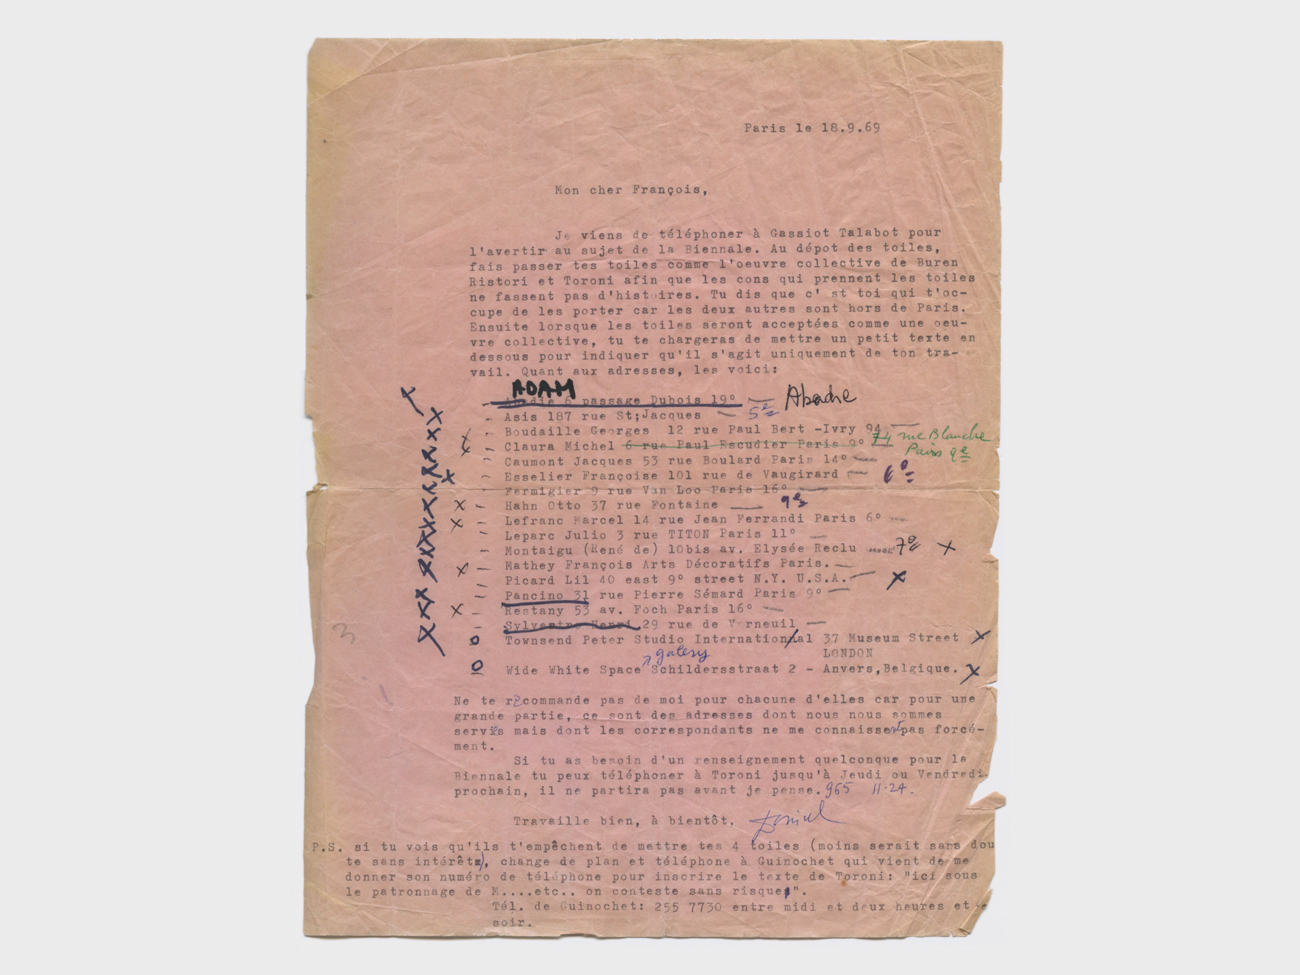 francois-ristori-exposition-biennale-paris-1969-lettre